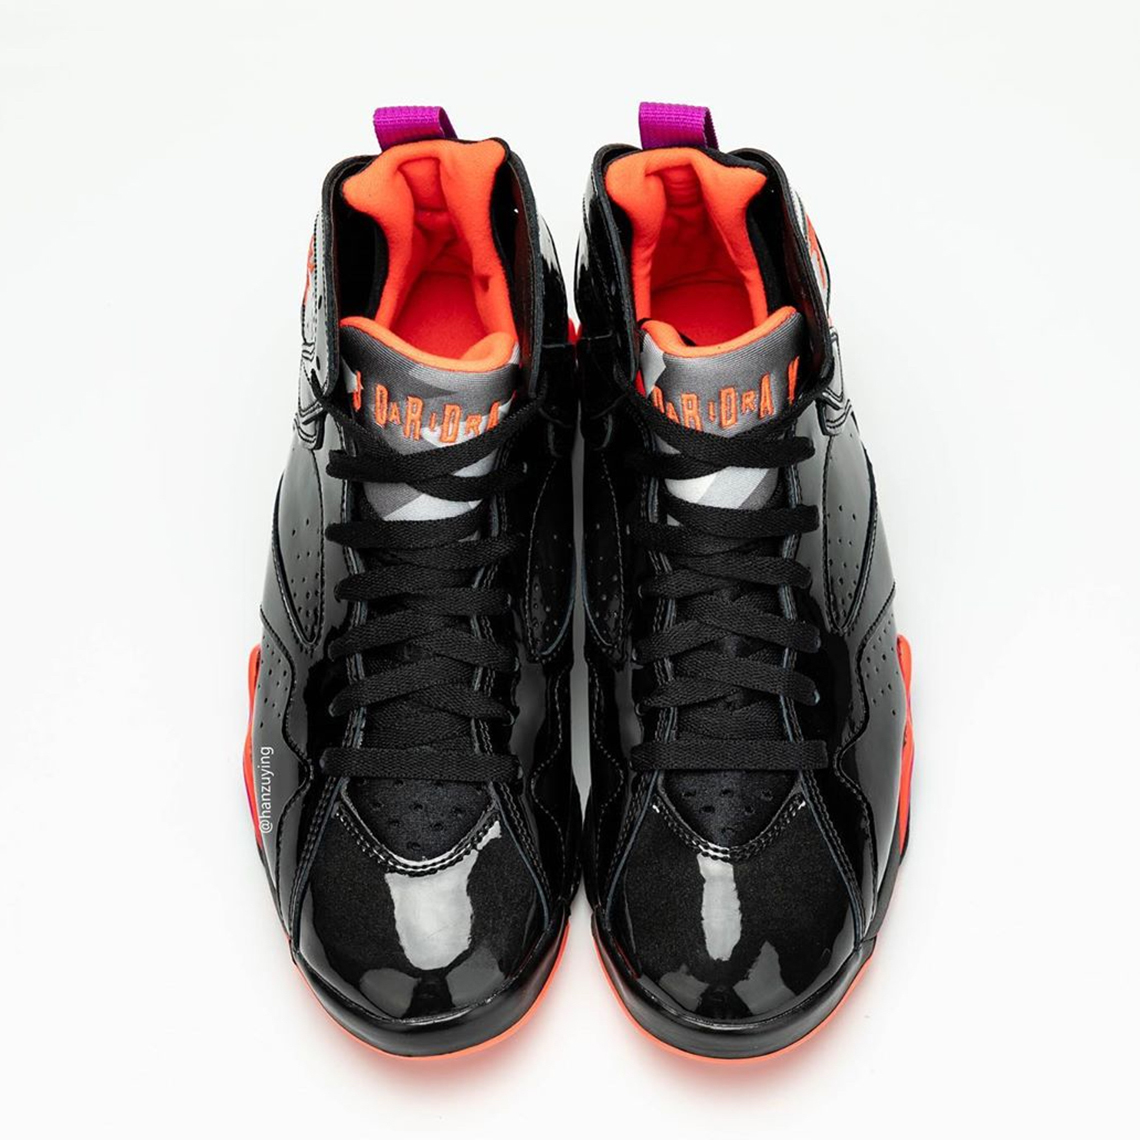 Air Jordan 11 Low Clippers Michael Jordan PE Black Patent Leather 313358 006 9